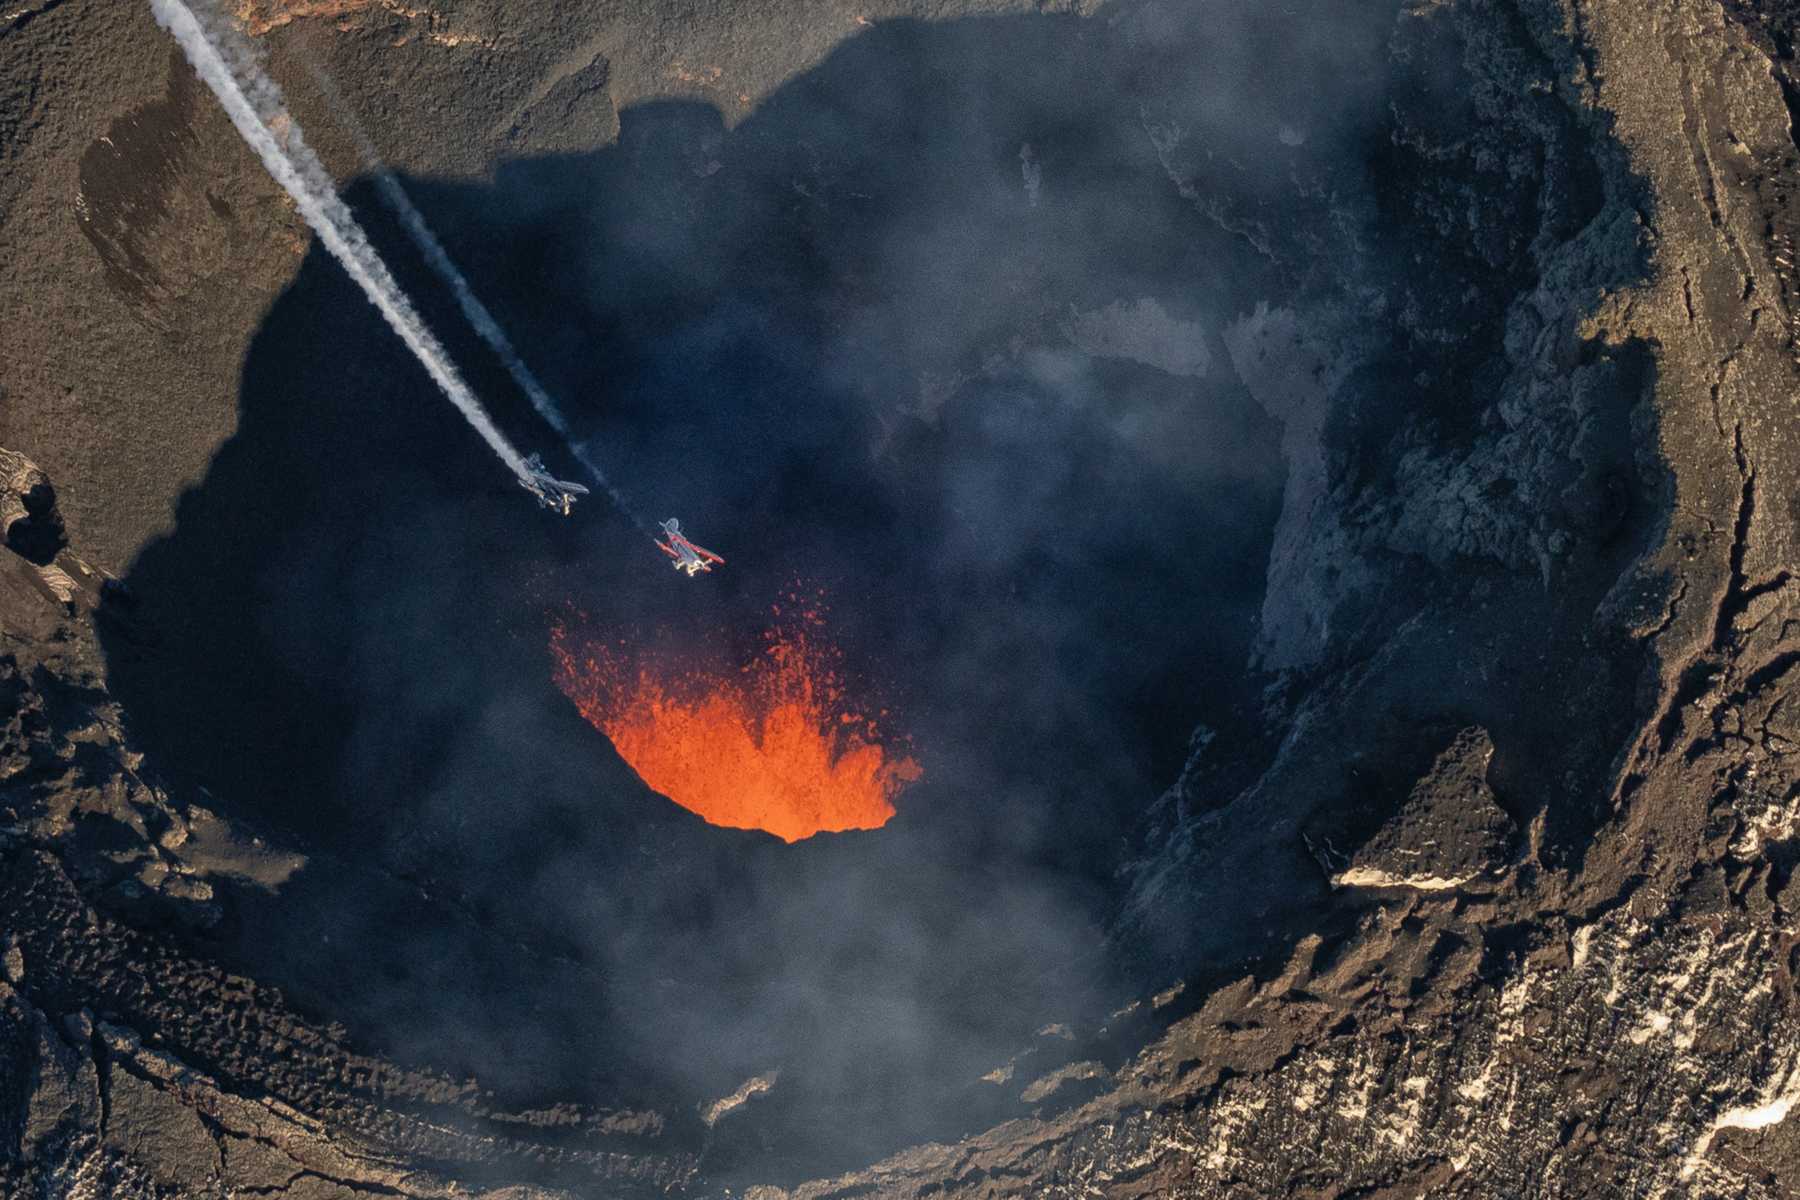 Aviones Pitts del Team acrobático Villarrica cruzando sobre el cráter del Volcan Villarrica, región de la Araucanía, Chile. Fotos y videos: Diego Spatafore (@spataforediego)